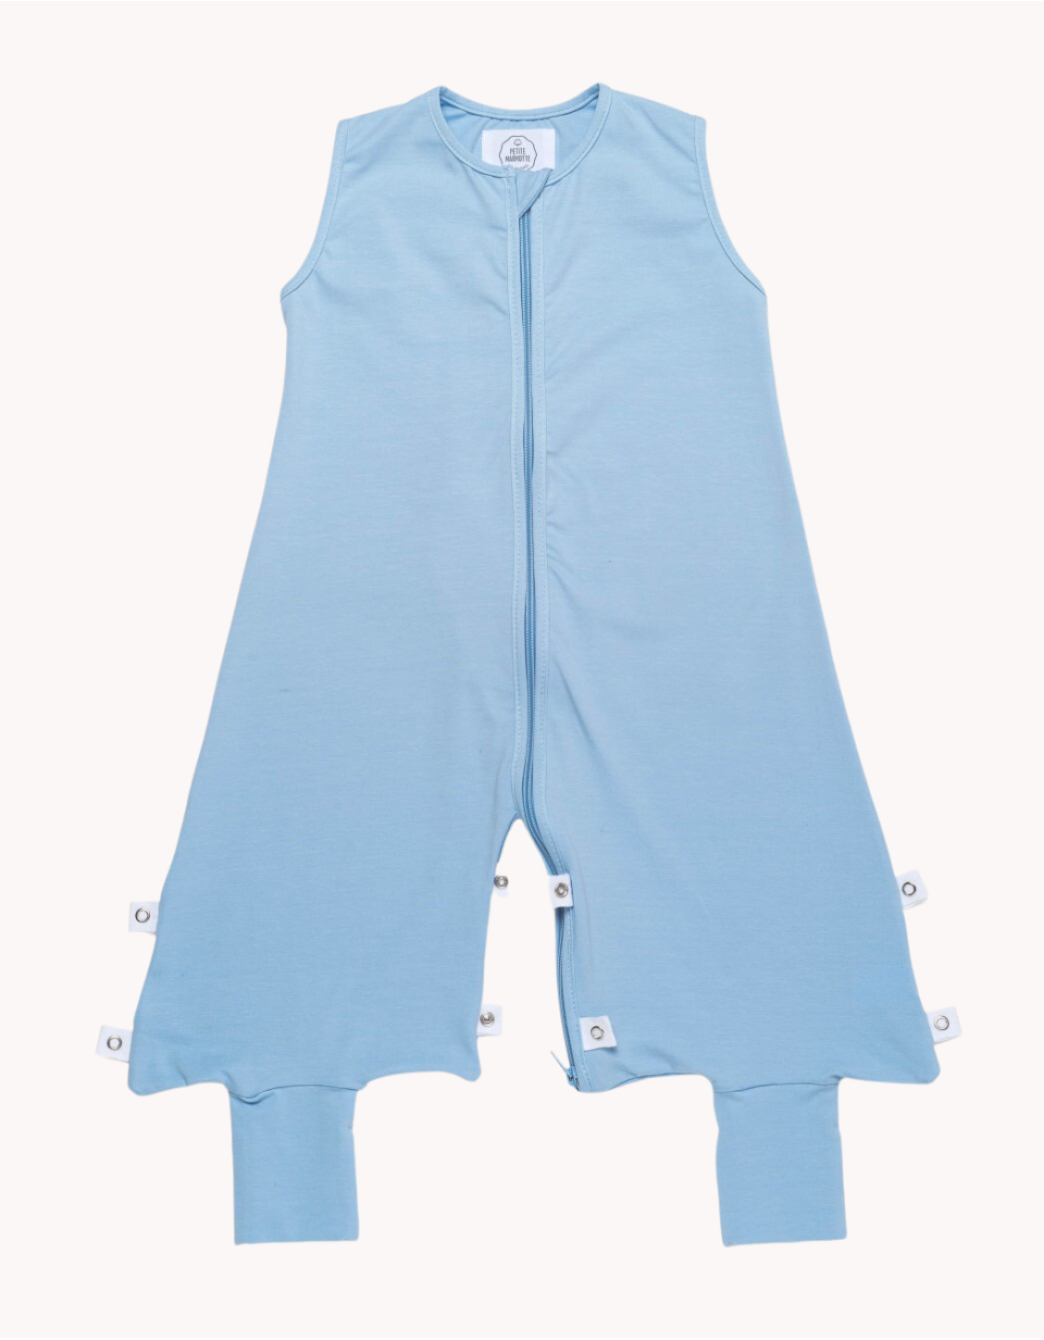 Pijama azul TOG 0,5_petite marmotte